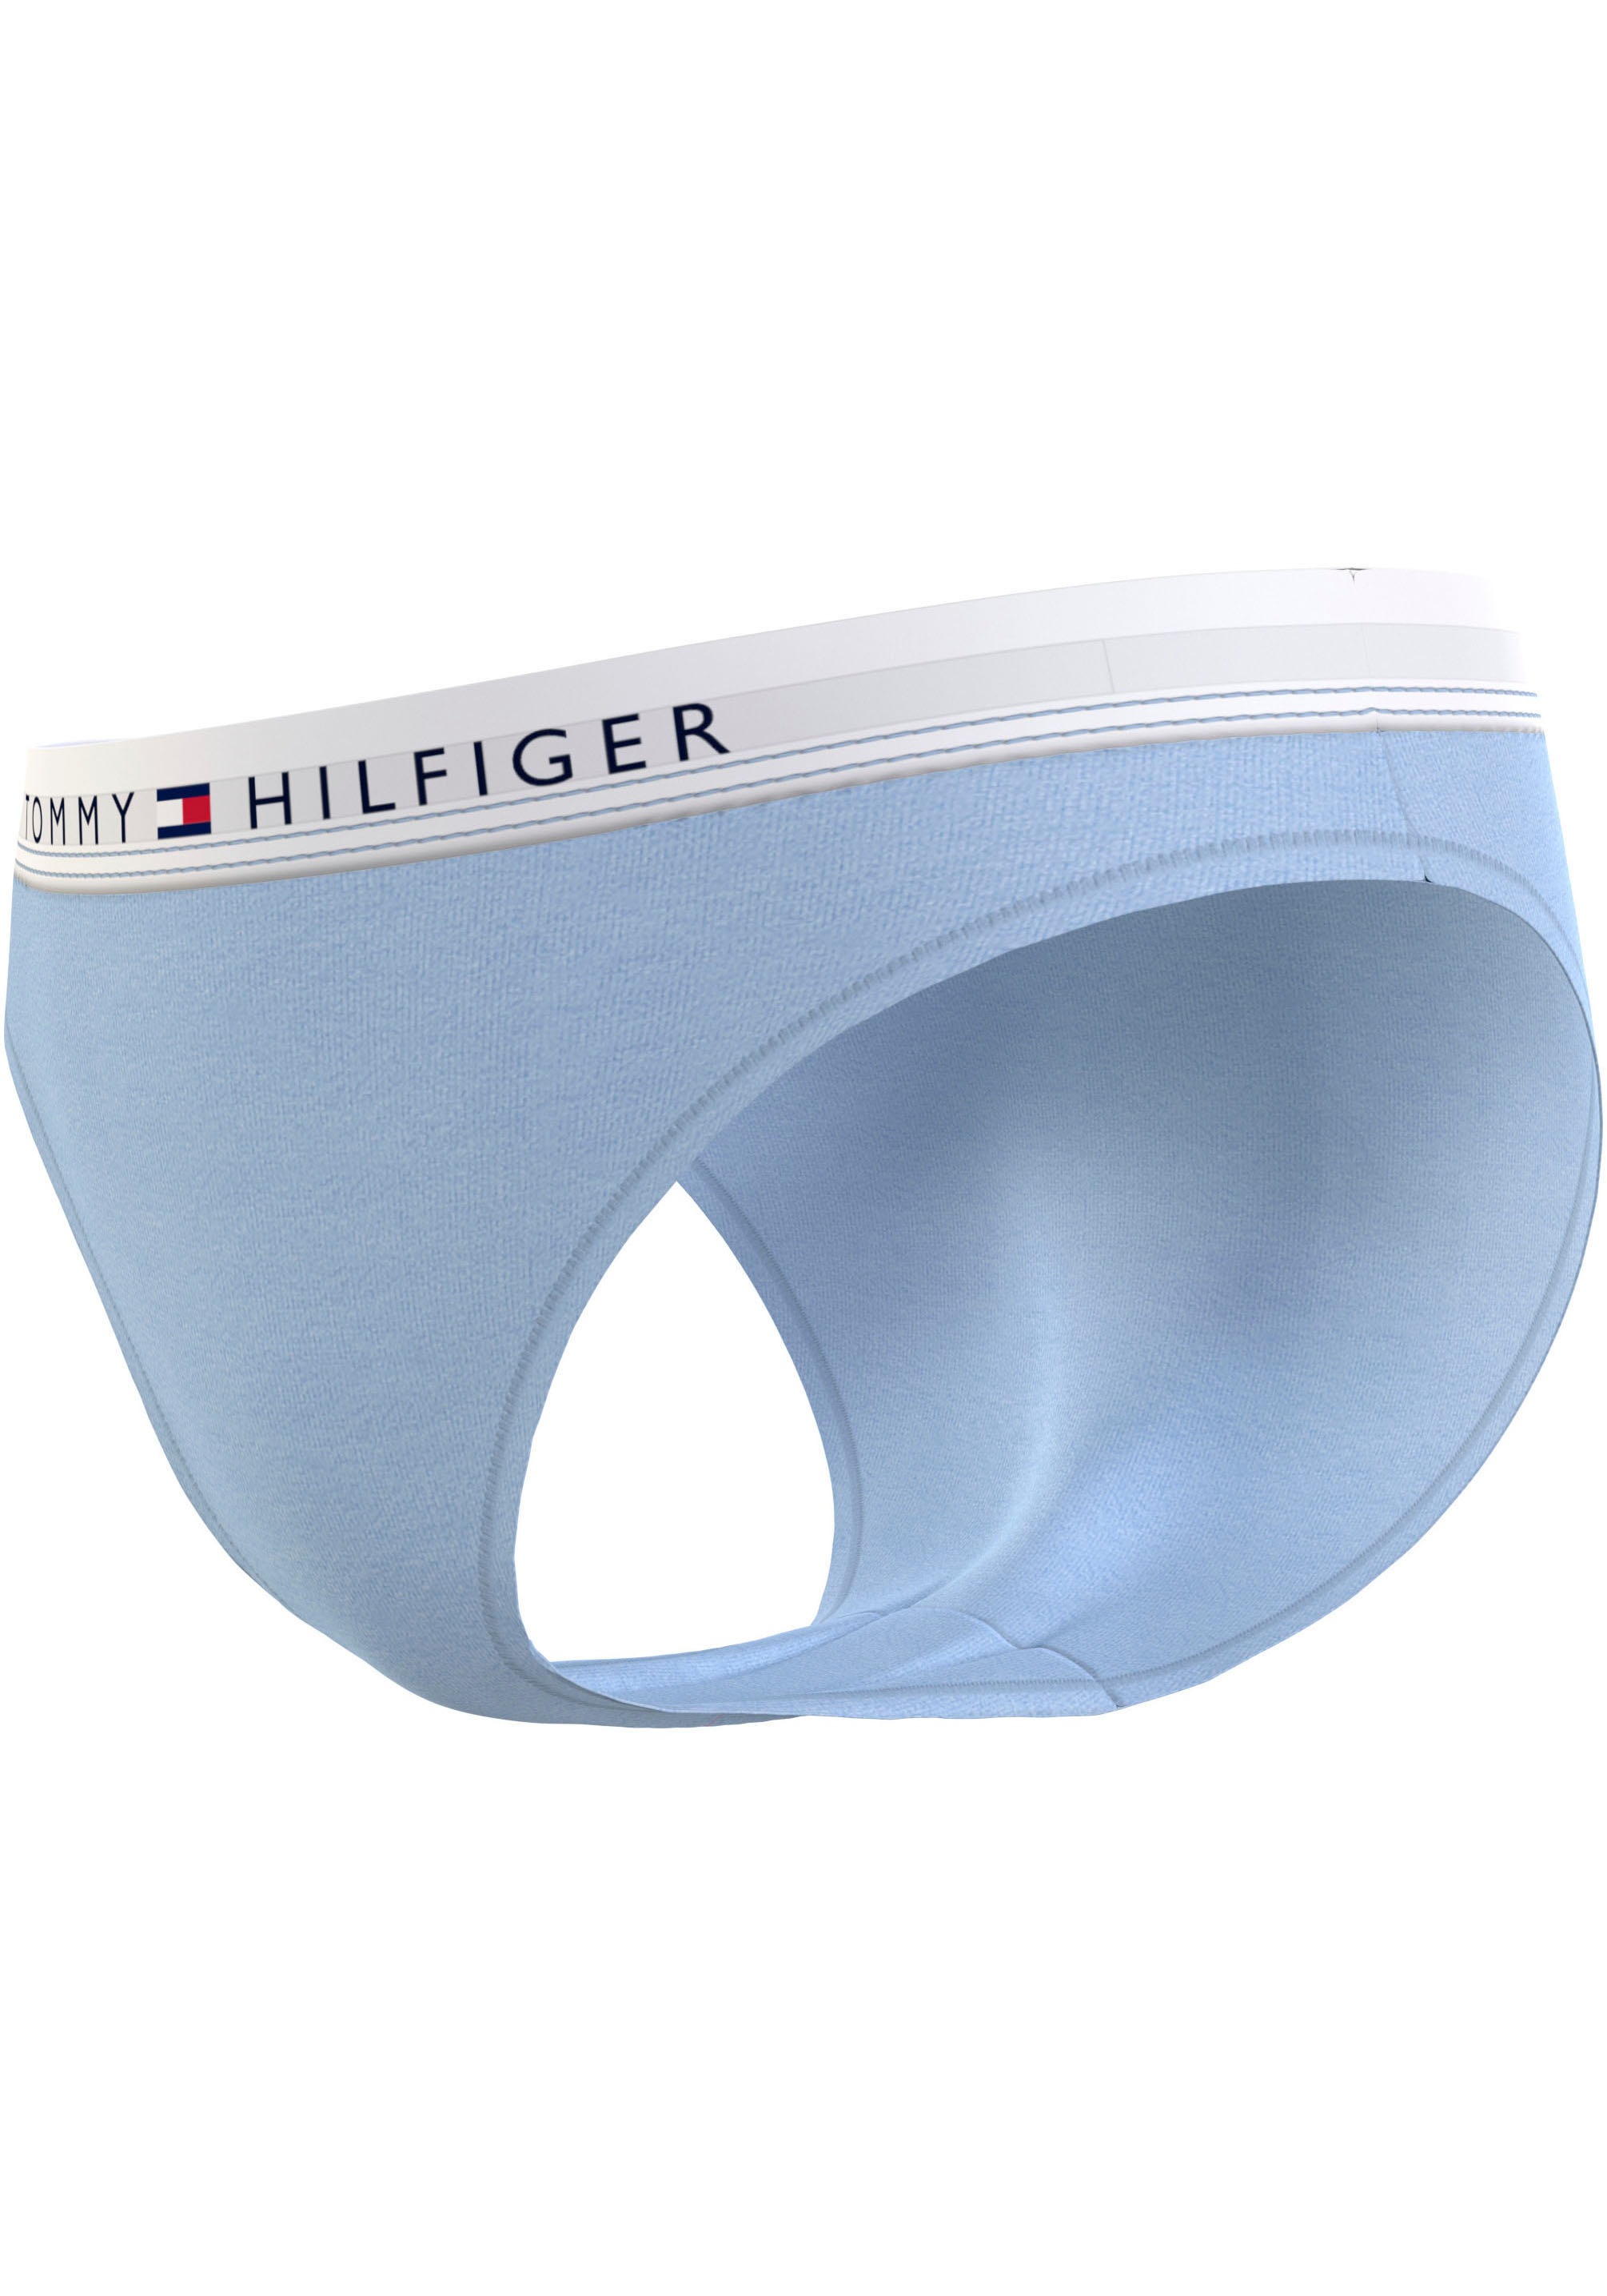 Tommy Hilfiger Underwear Slip »BIKINI«, mit Tommy Hilfiger Markenlabel